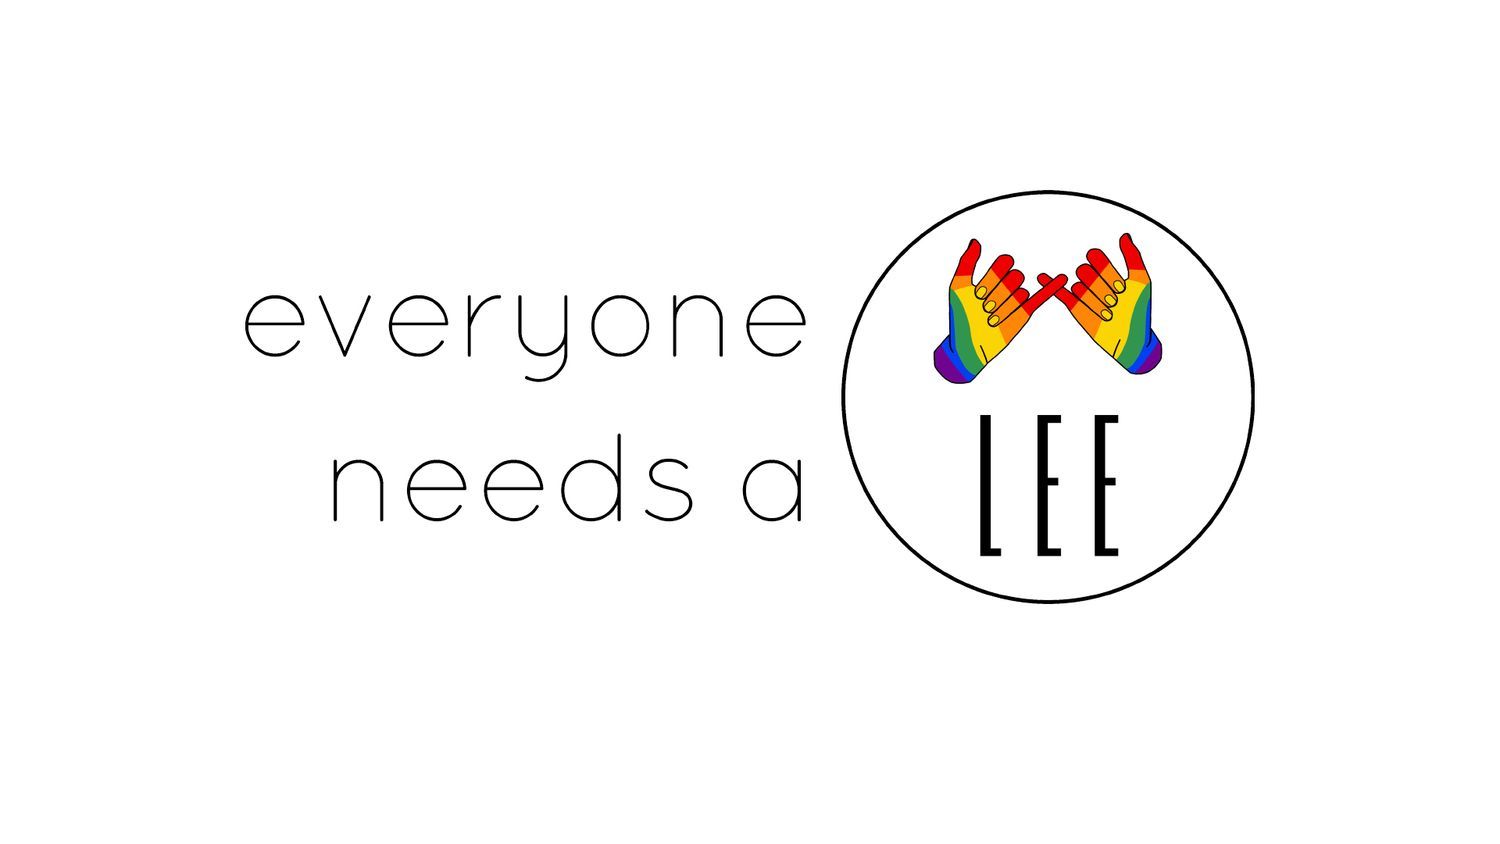 Everyone needs a Lee - Slogan Team Lee app